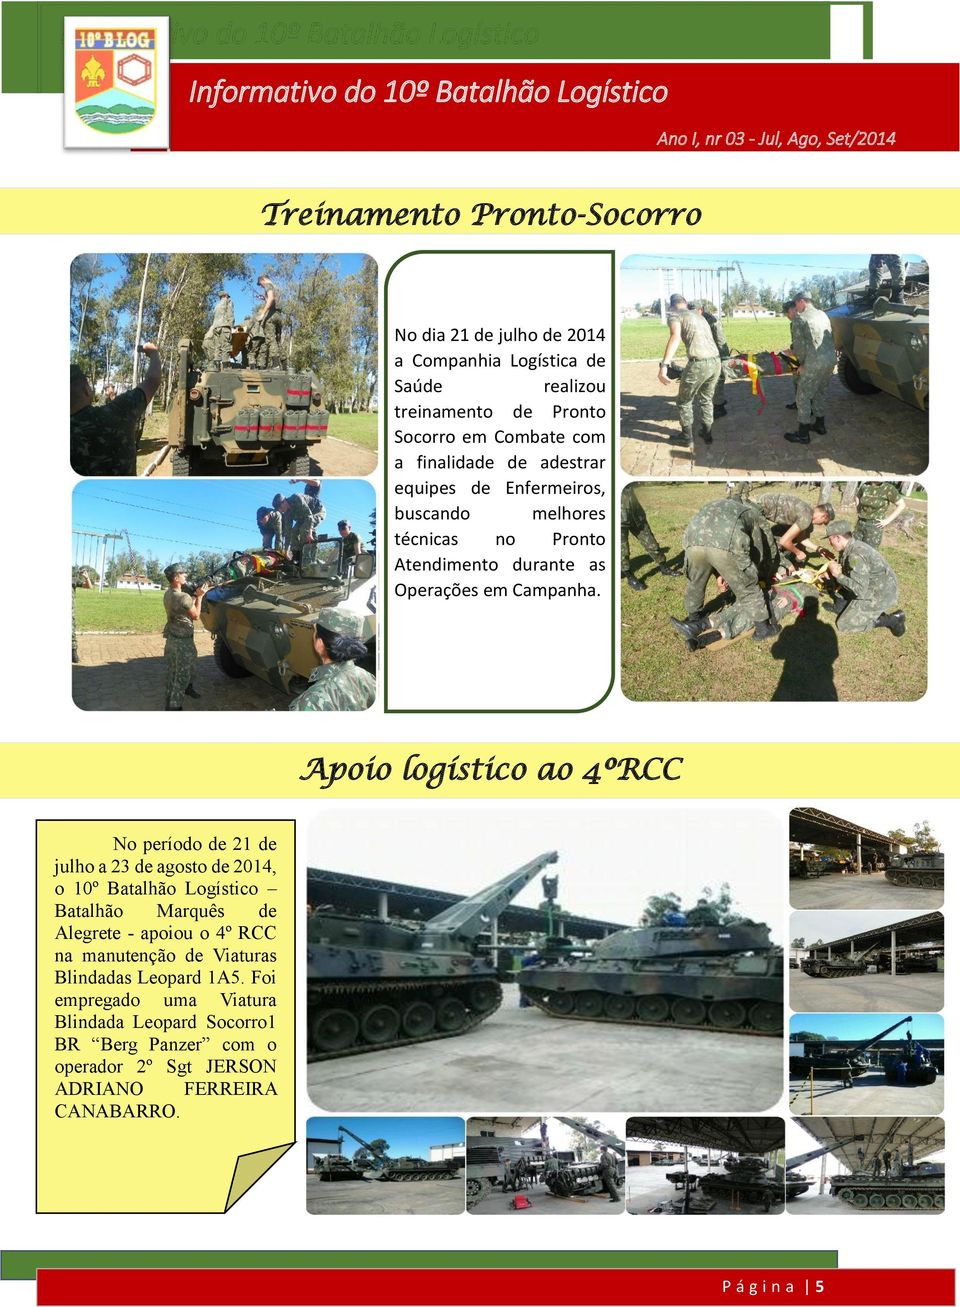 Apoio logístico ao 4ºRCC No período de 21 de julho a 23 de agosto de 2014, o 10º Batalhão Logístico Batalhão Marquês de Alegrete - apoiou o 4º RCC na